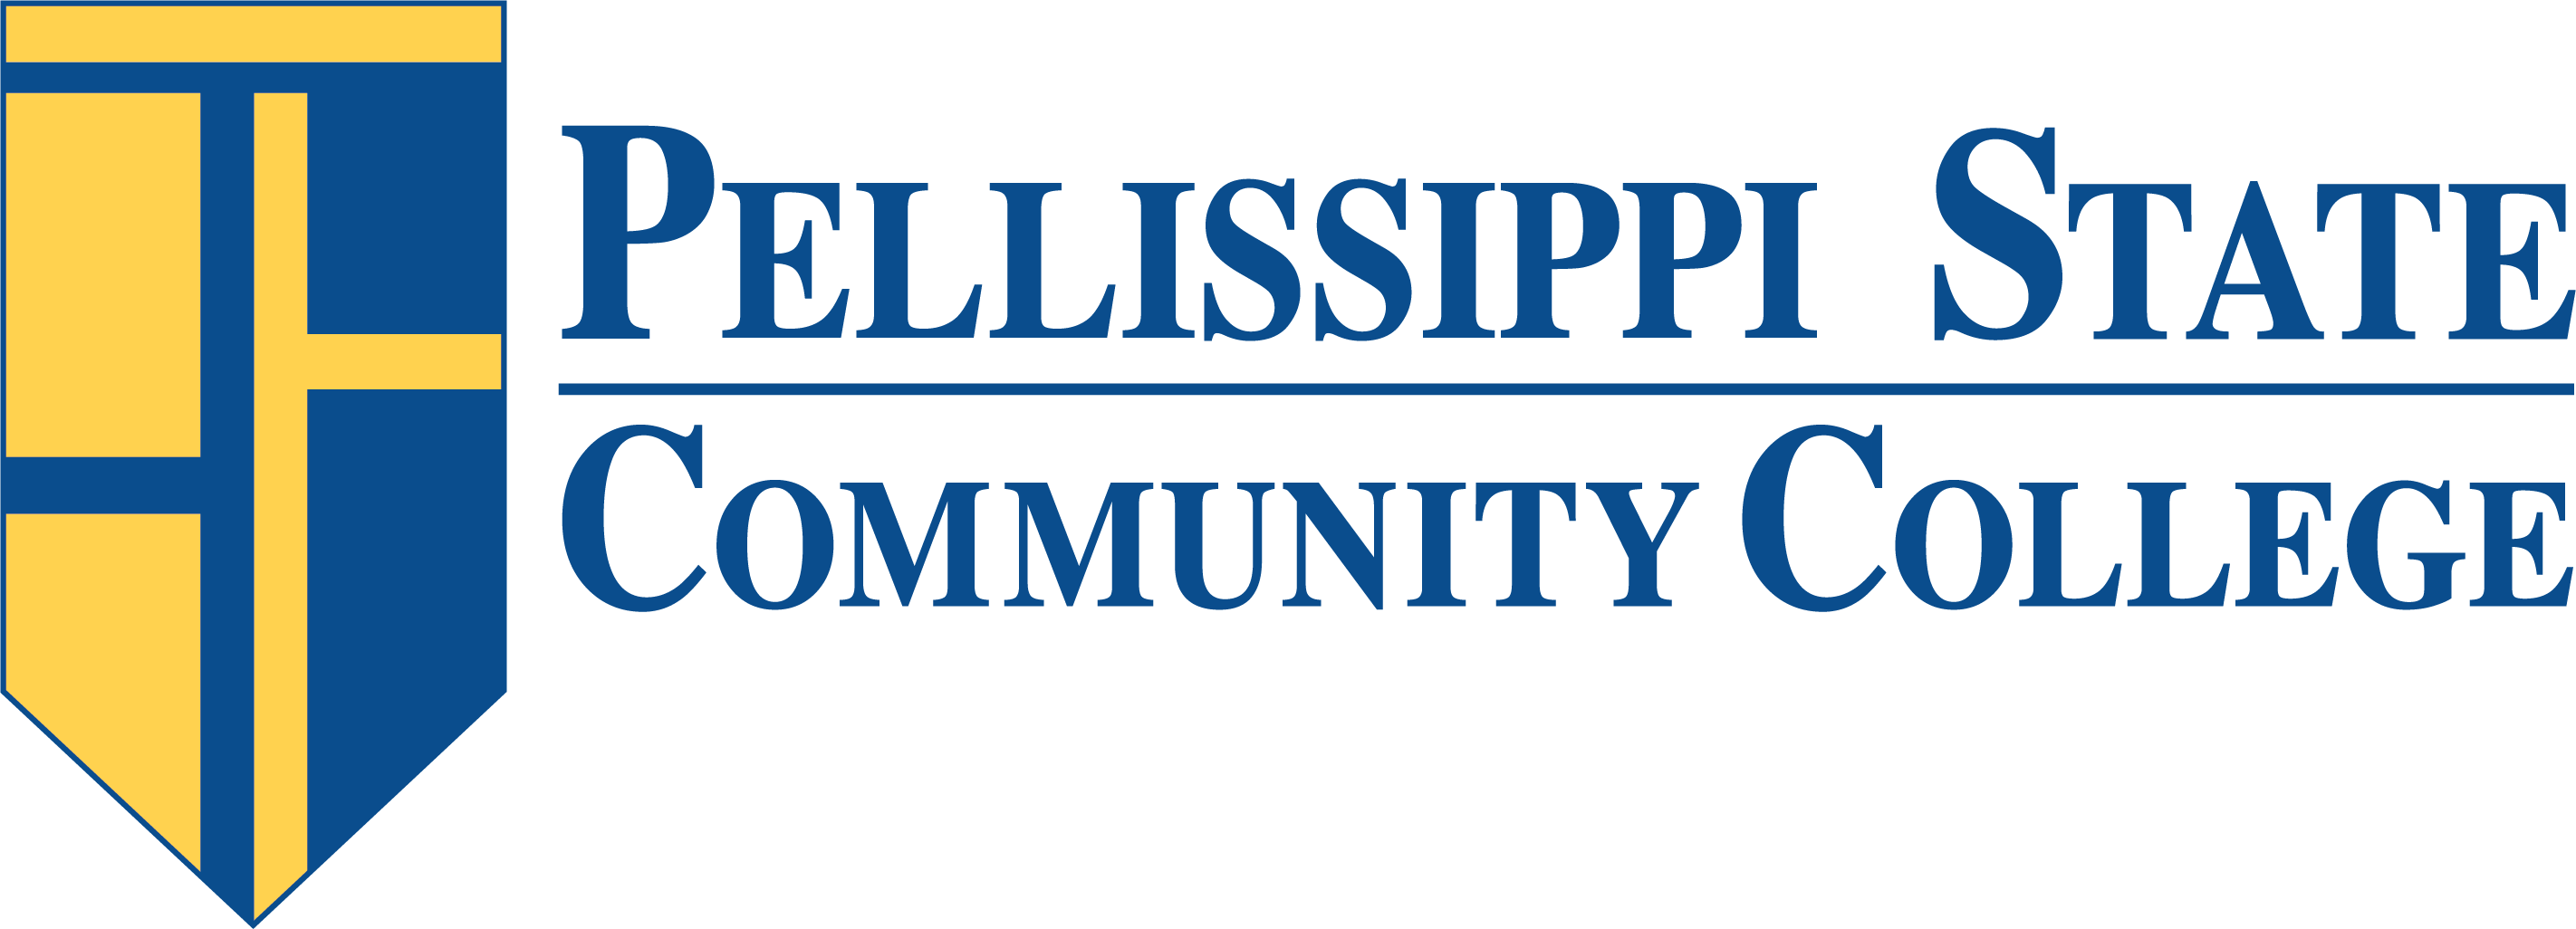 Pellissippi Calendar 2022 Dates - Pellissippi State Community College